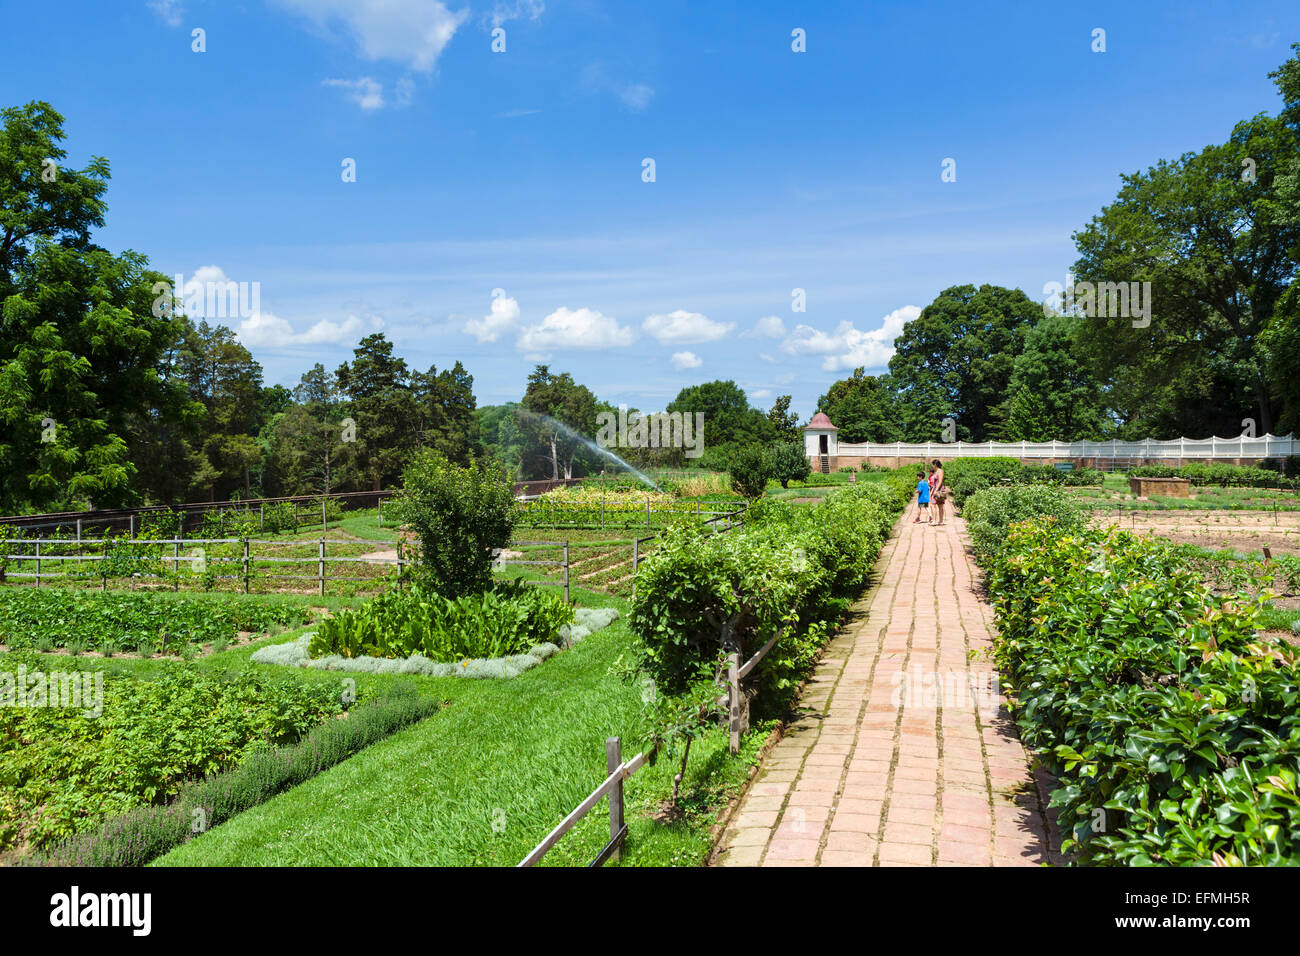 Le jardin inférieur dans les motifs du président George Washington's plantation mansion au Mont Vernon, comté de Fairfax, Virginie, États-Unis Banque D'Images